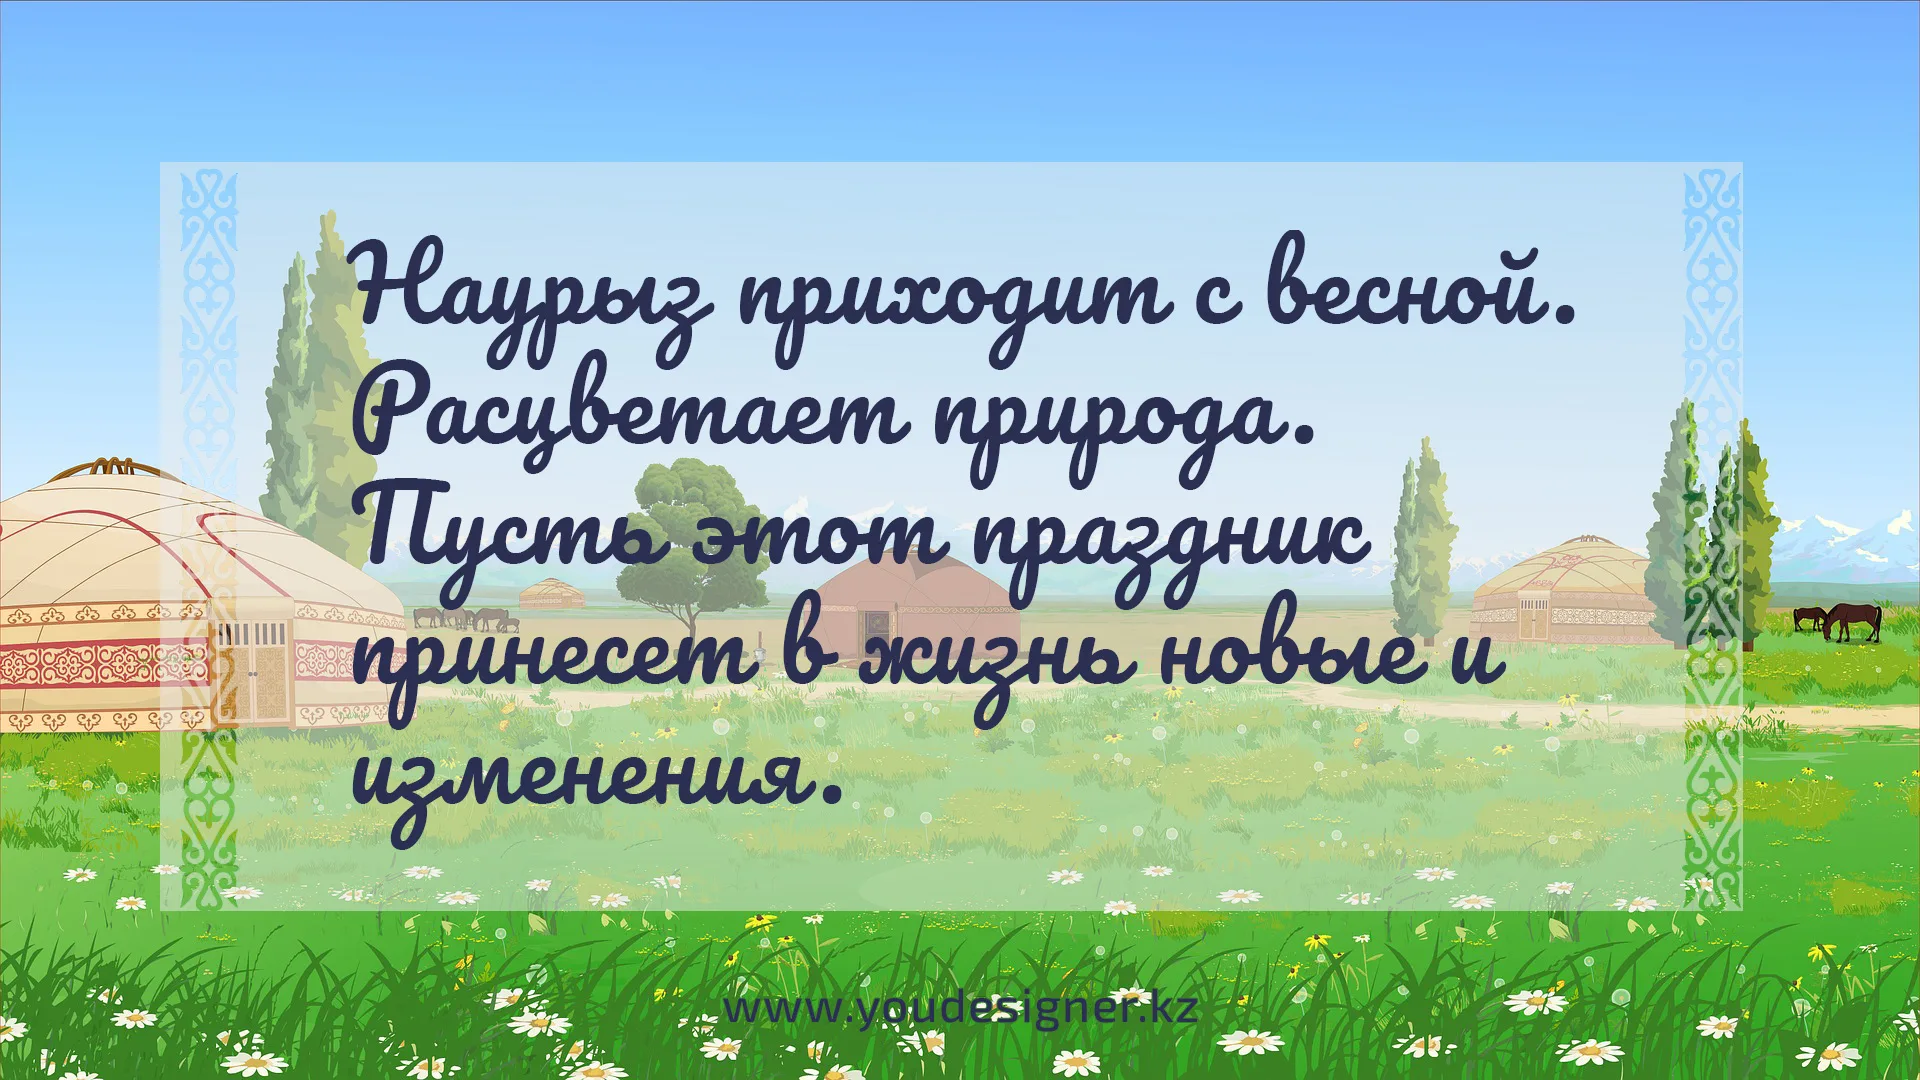 Песня про наурыз детская. Поздравление с Наурызом на казахском языке. Наурыз на казахском языке. С праздником Наурыз на казахском языке. Детские стихи про Наурыз.